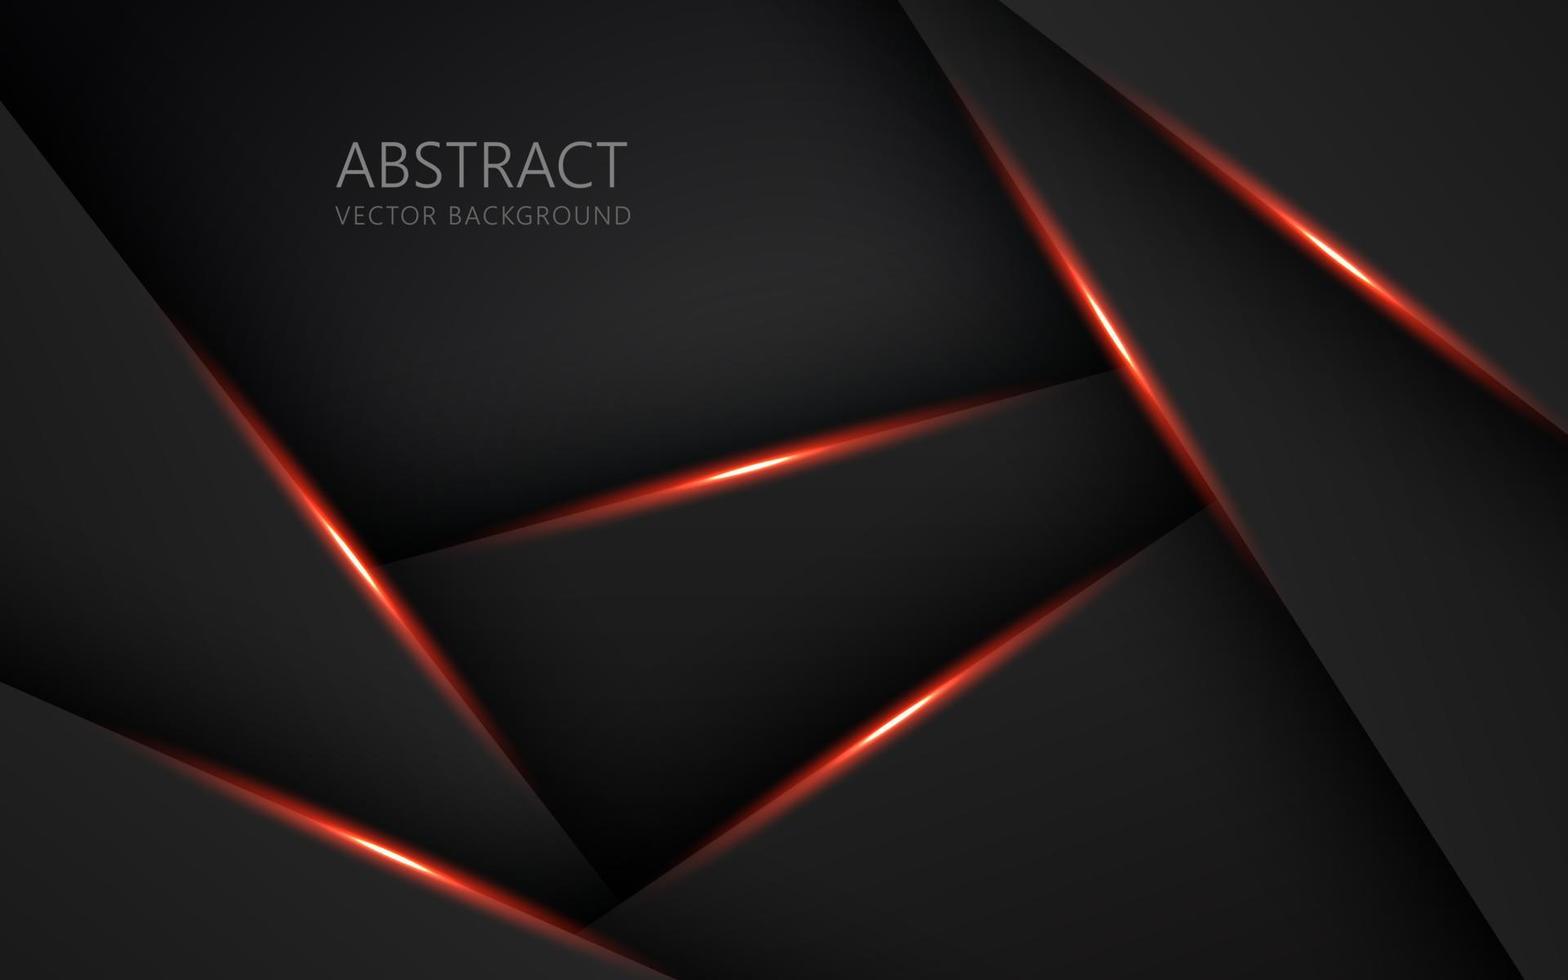 abstrait lumière orange noir espace cadre mise en page design tech triangle concept gris texture fond. vecteur eps10